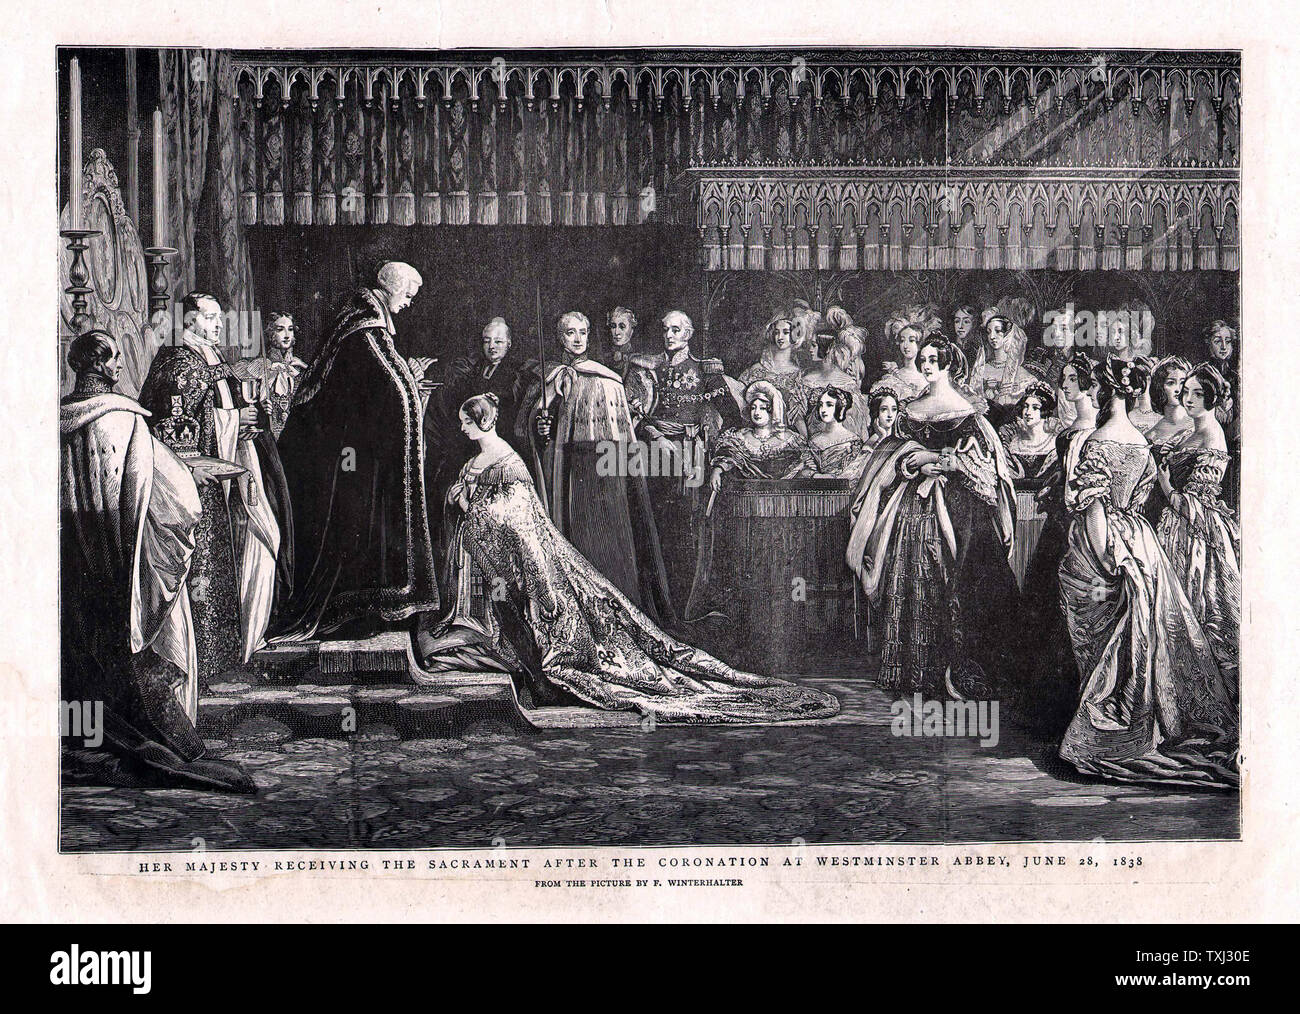 1901 La ilustración gráfica de la reina Victoria recibiendo la scarament después de la coronación en 1838 Foto de stock